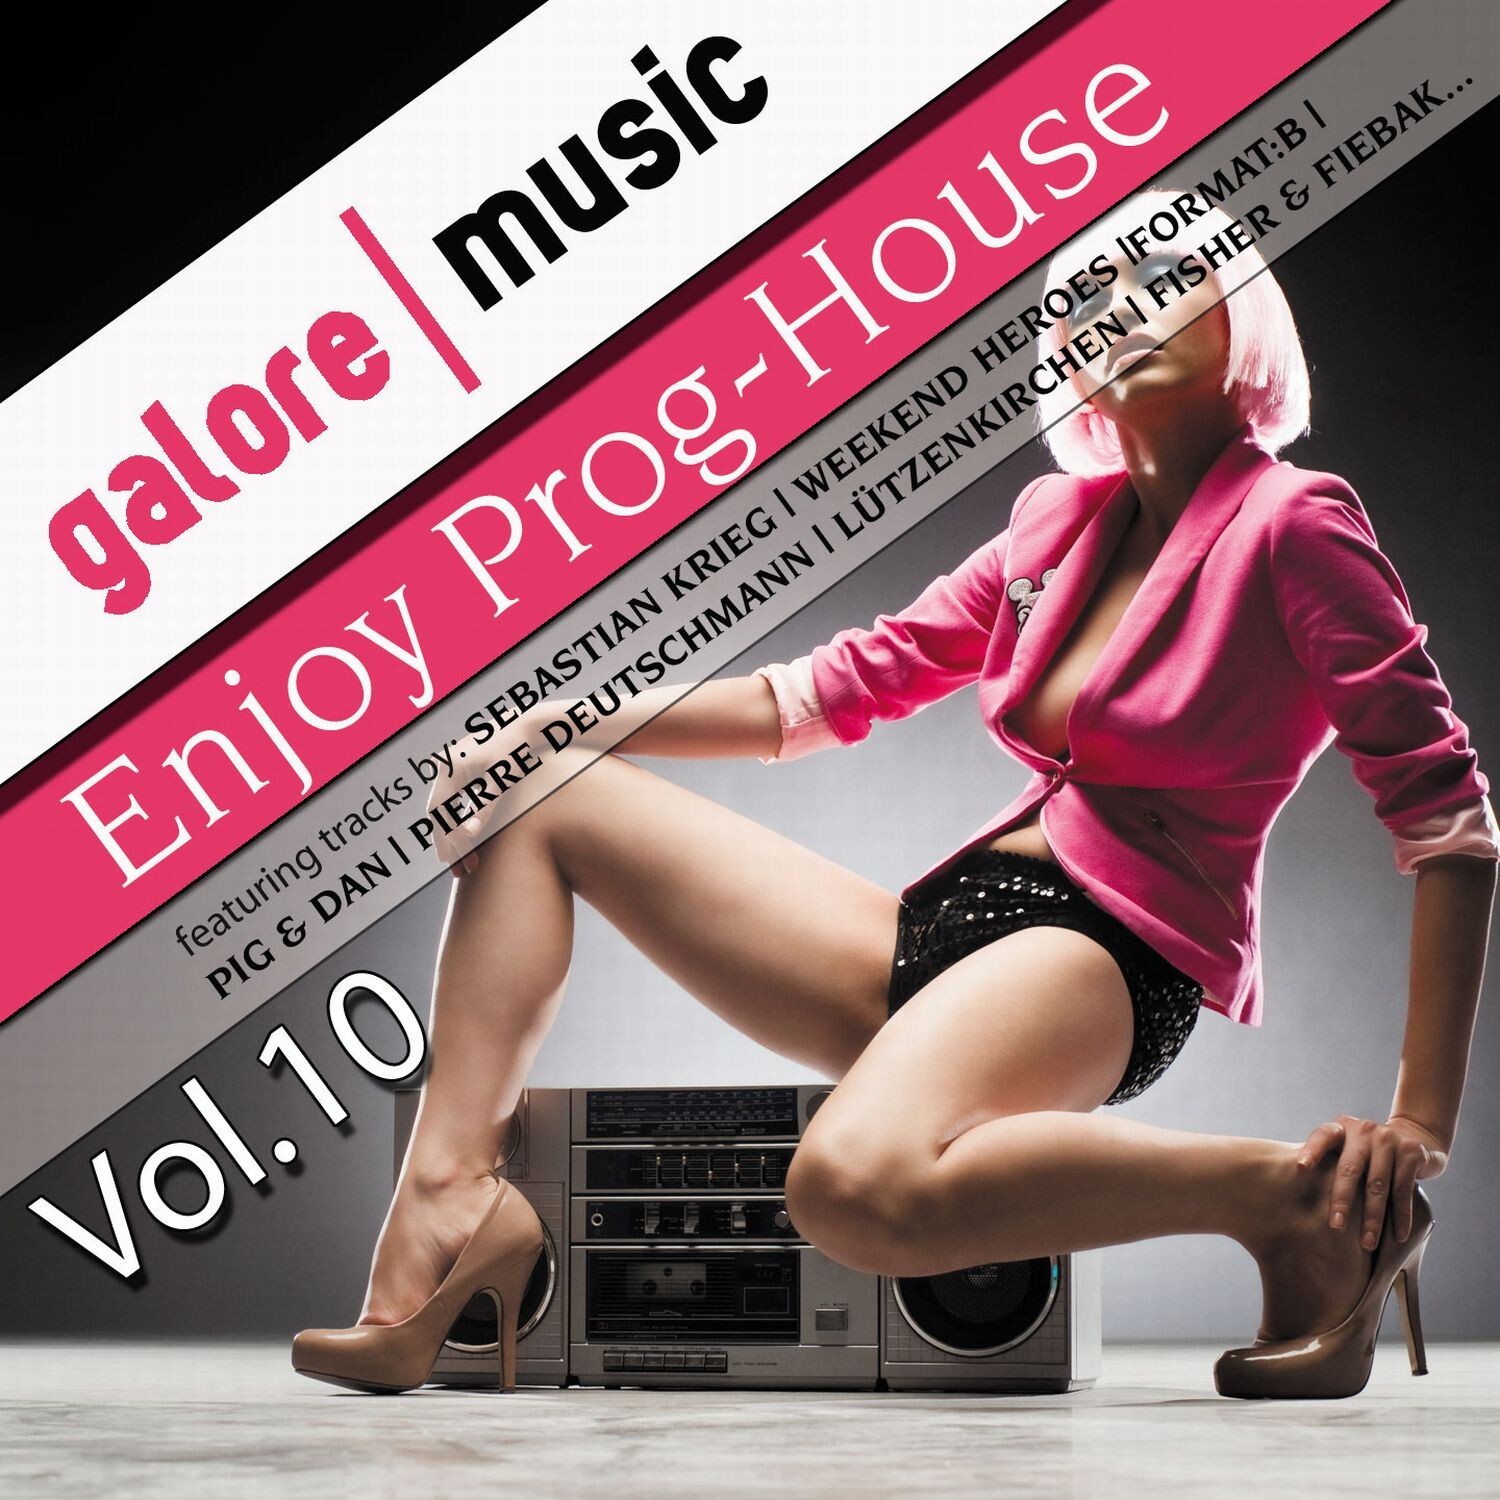 Enjoy Prog-House Vol. 10